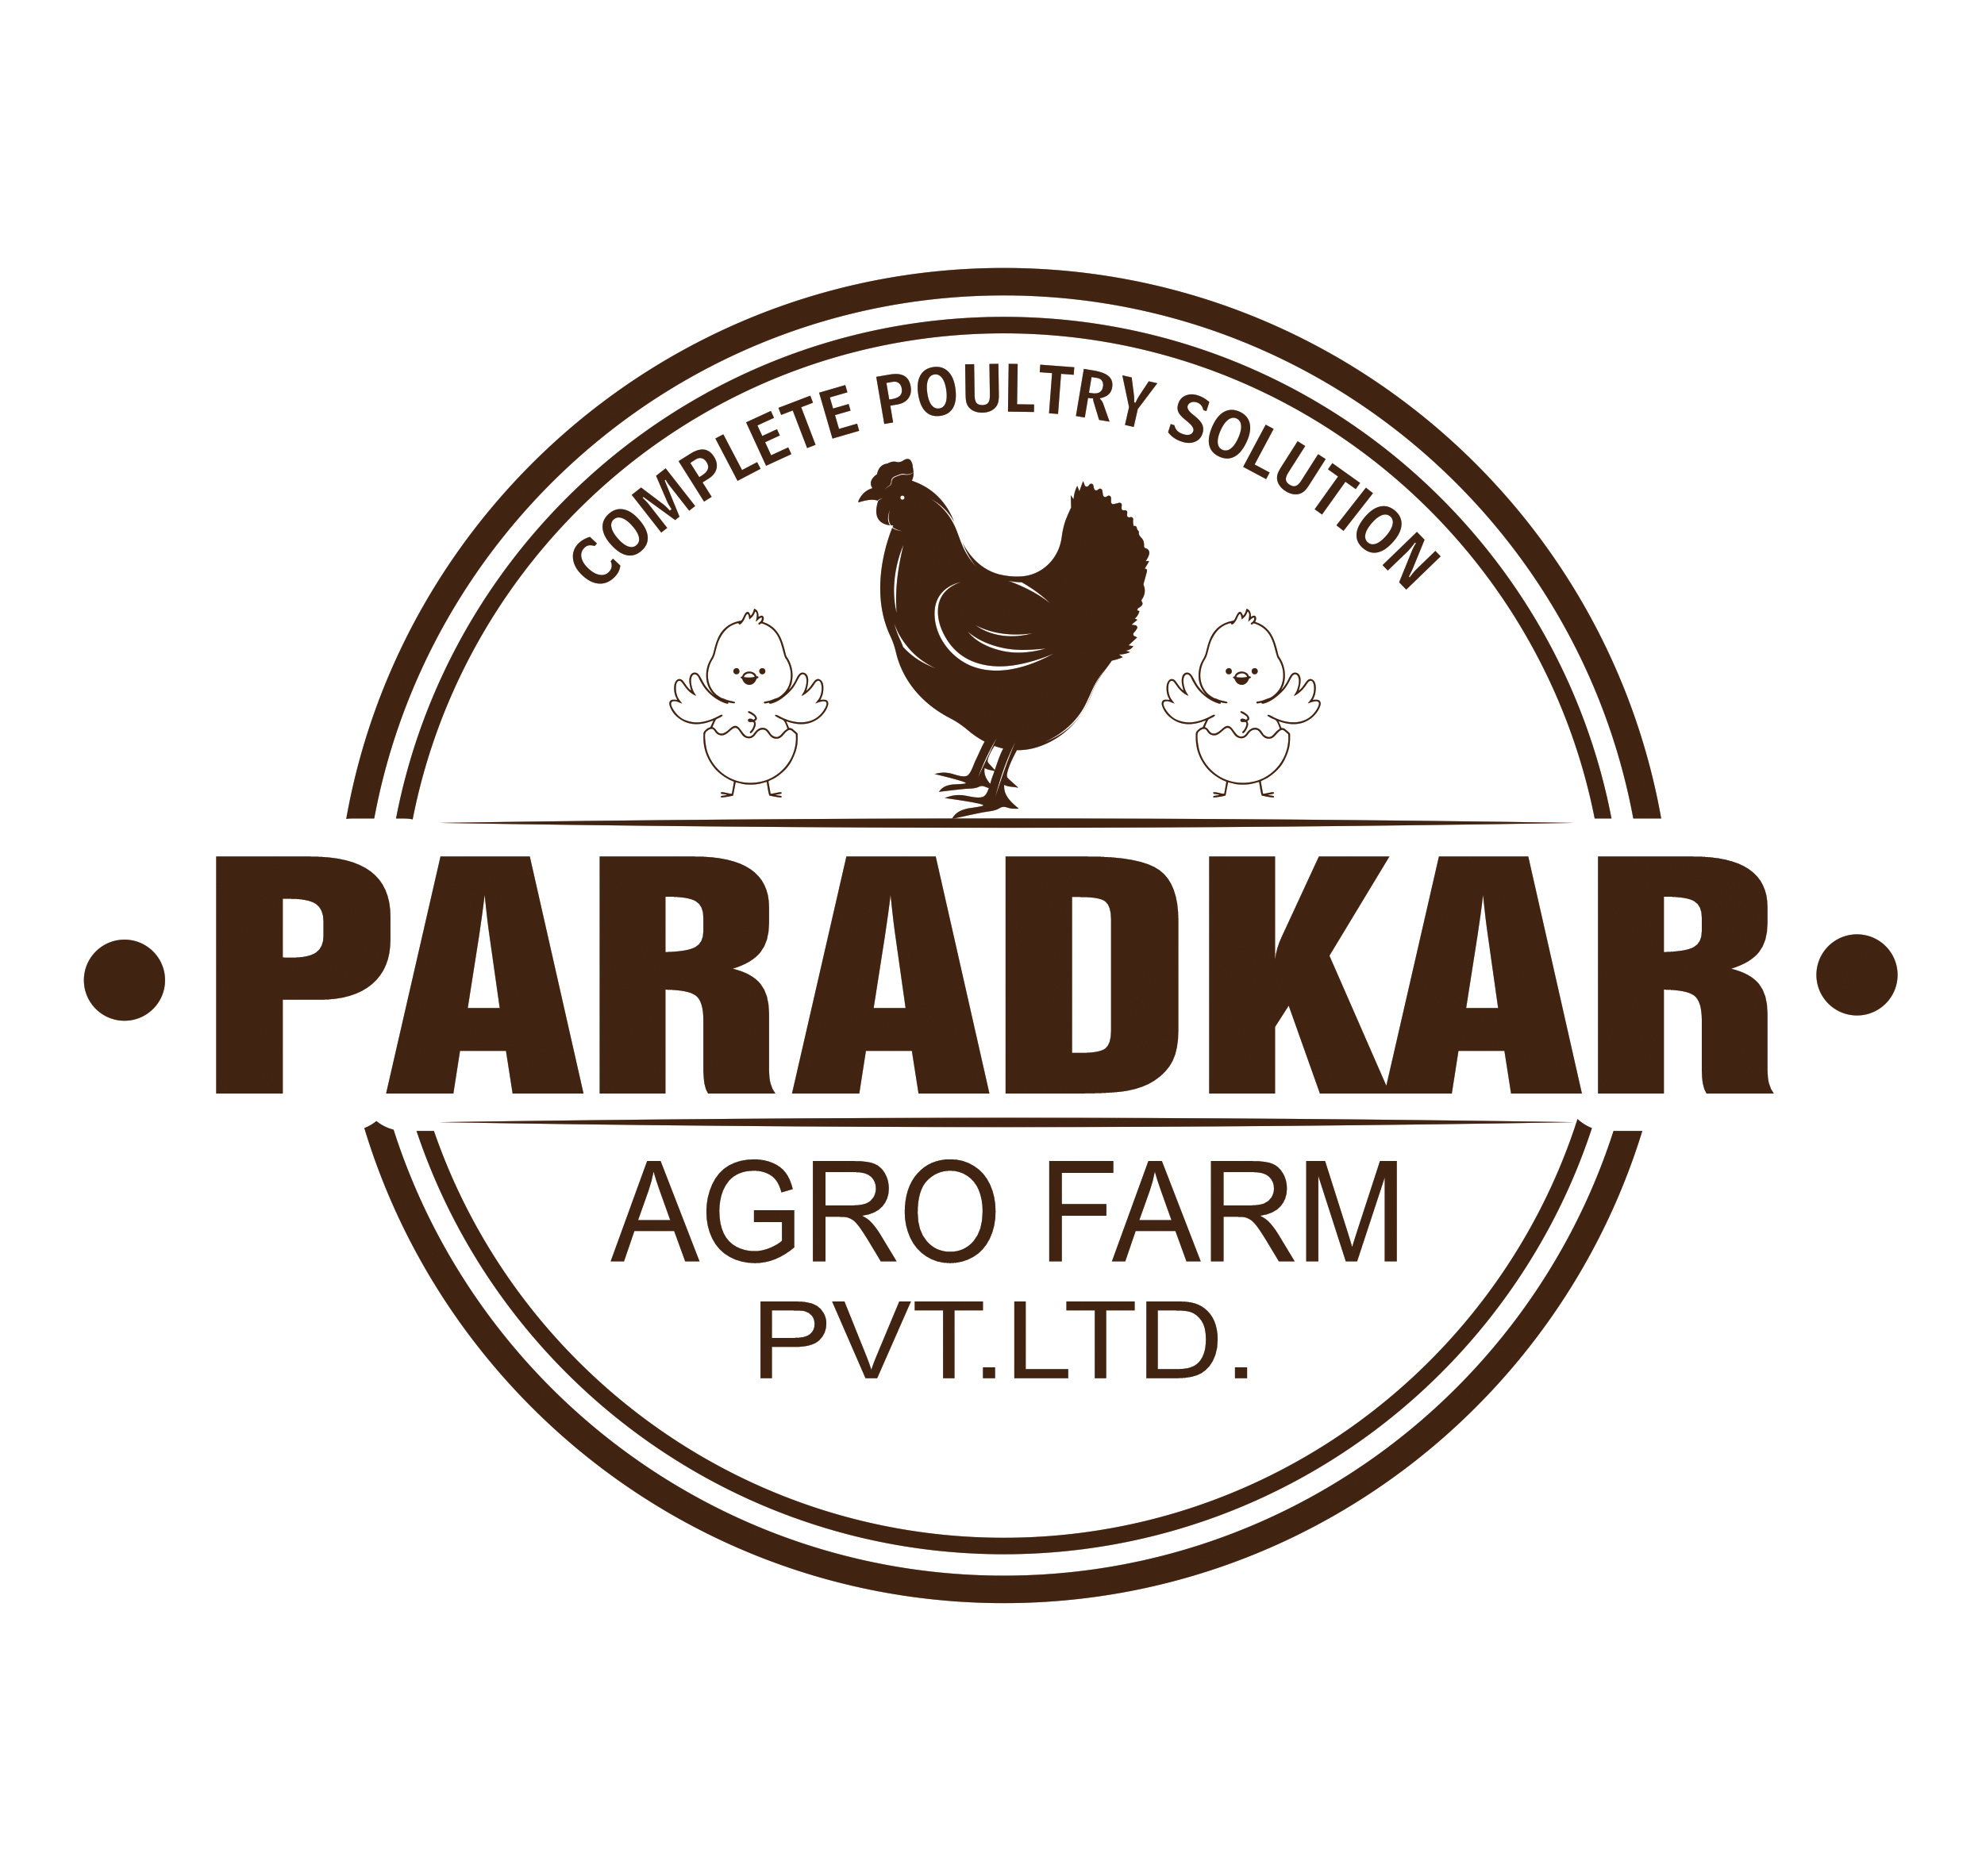 Founder Name: Mr. Pravesh Paradkar